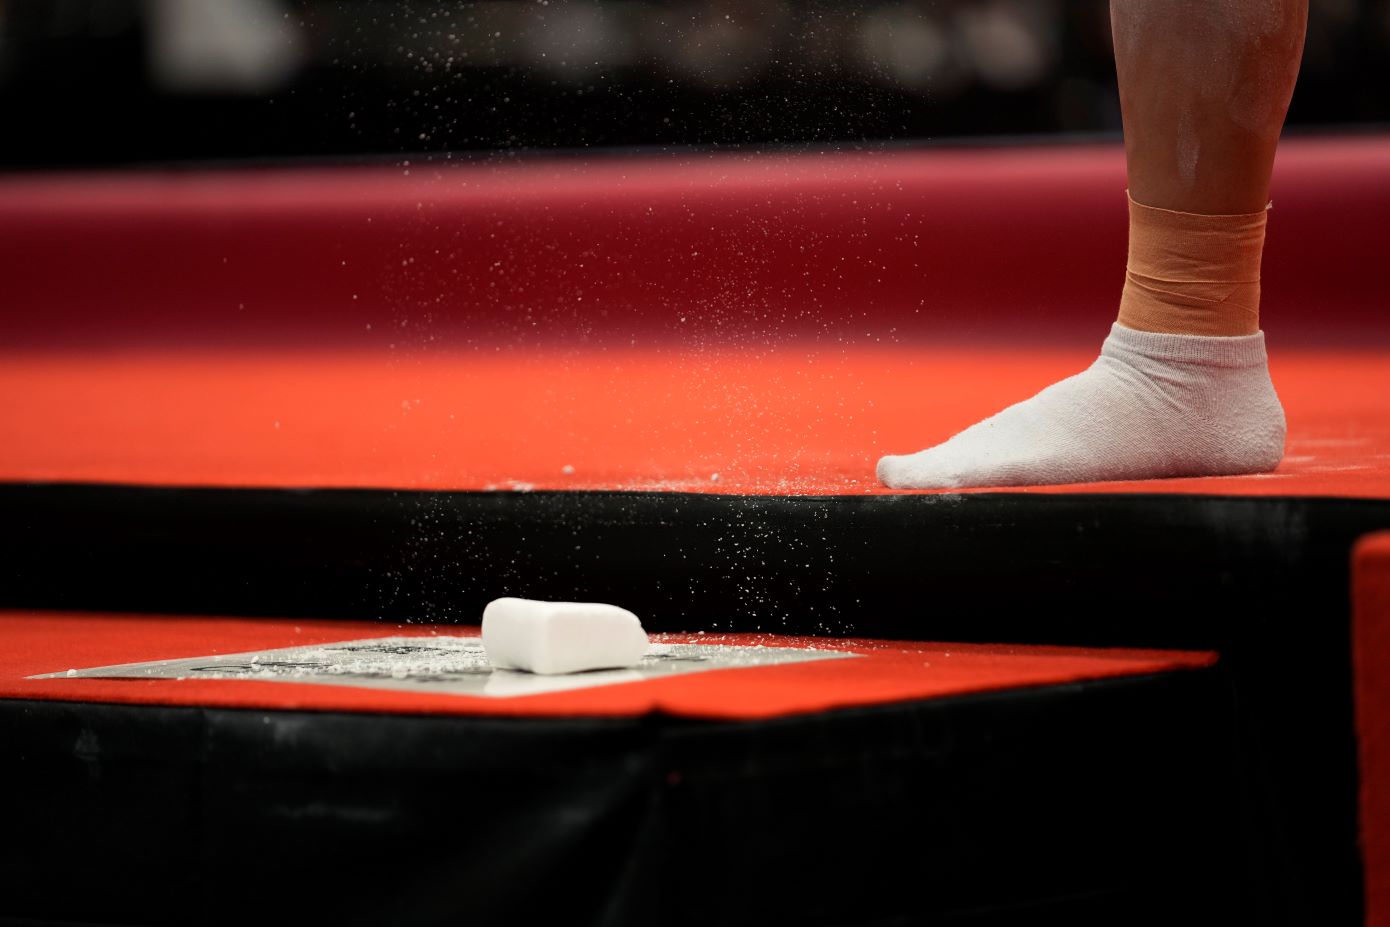 Ολυμπιακοί Αγώνες: Εκτός αγώνων γιατί κάπνισε η αρχηγός της ομάδας ενόργανης γυμναστικής της Ιαπωνίας, Σόκο Μιγιάτα